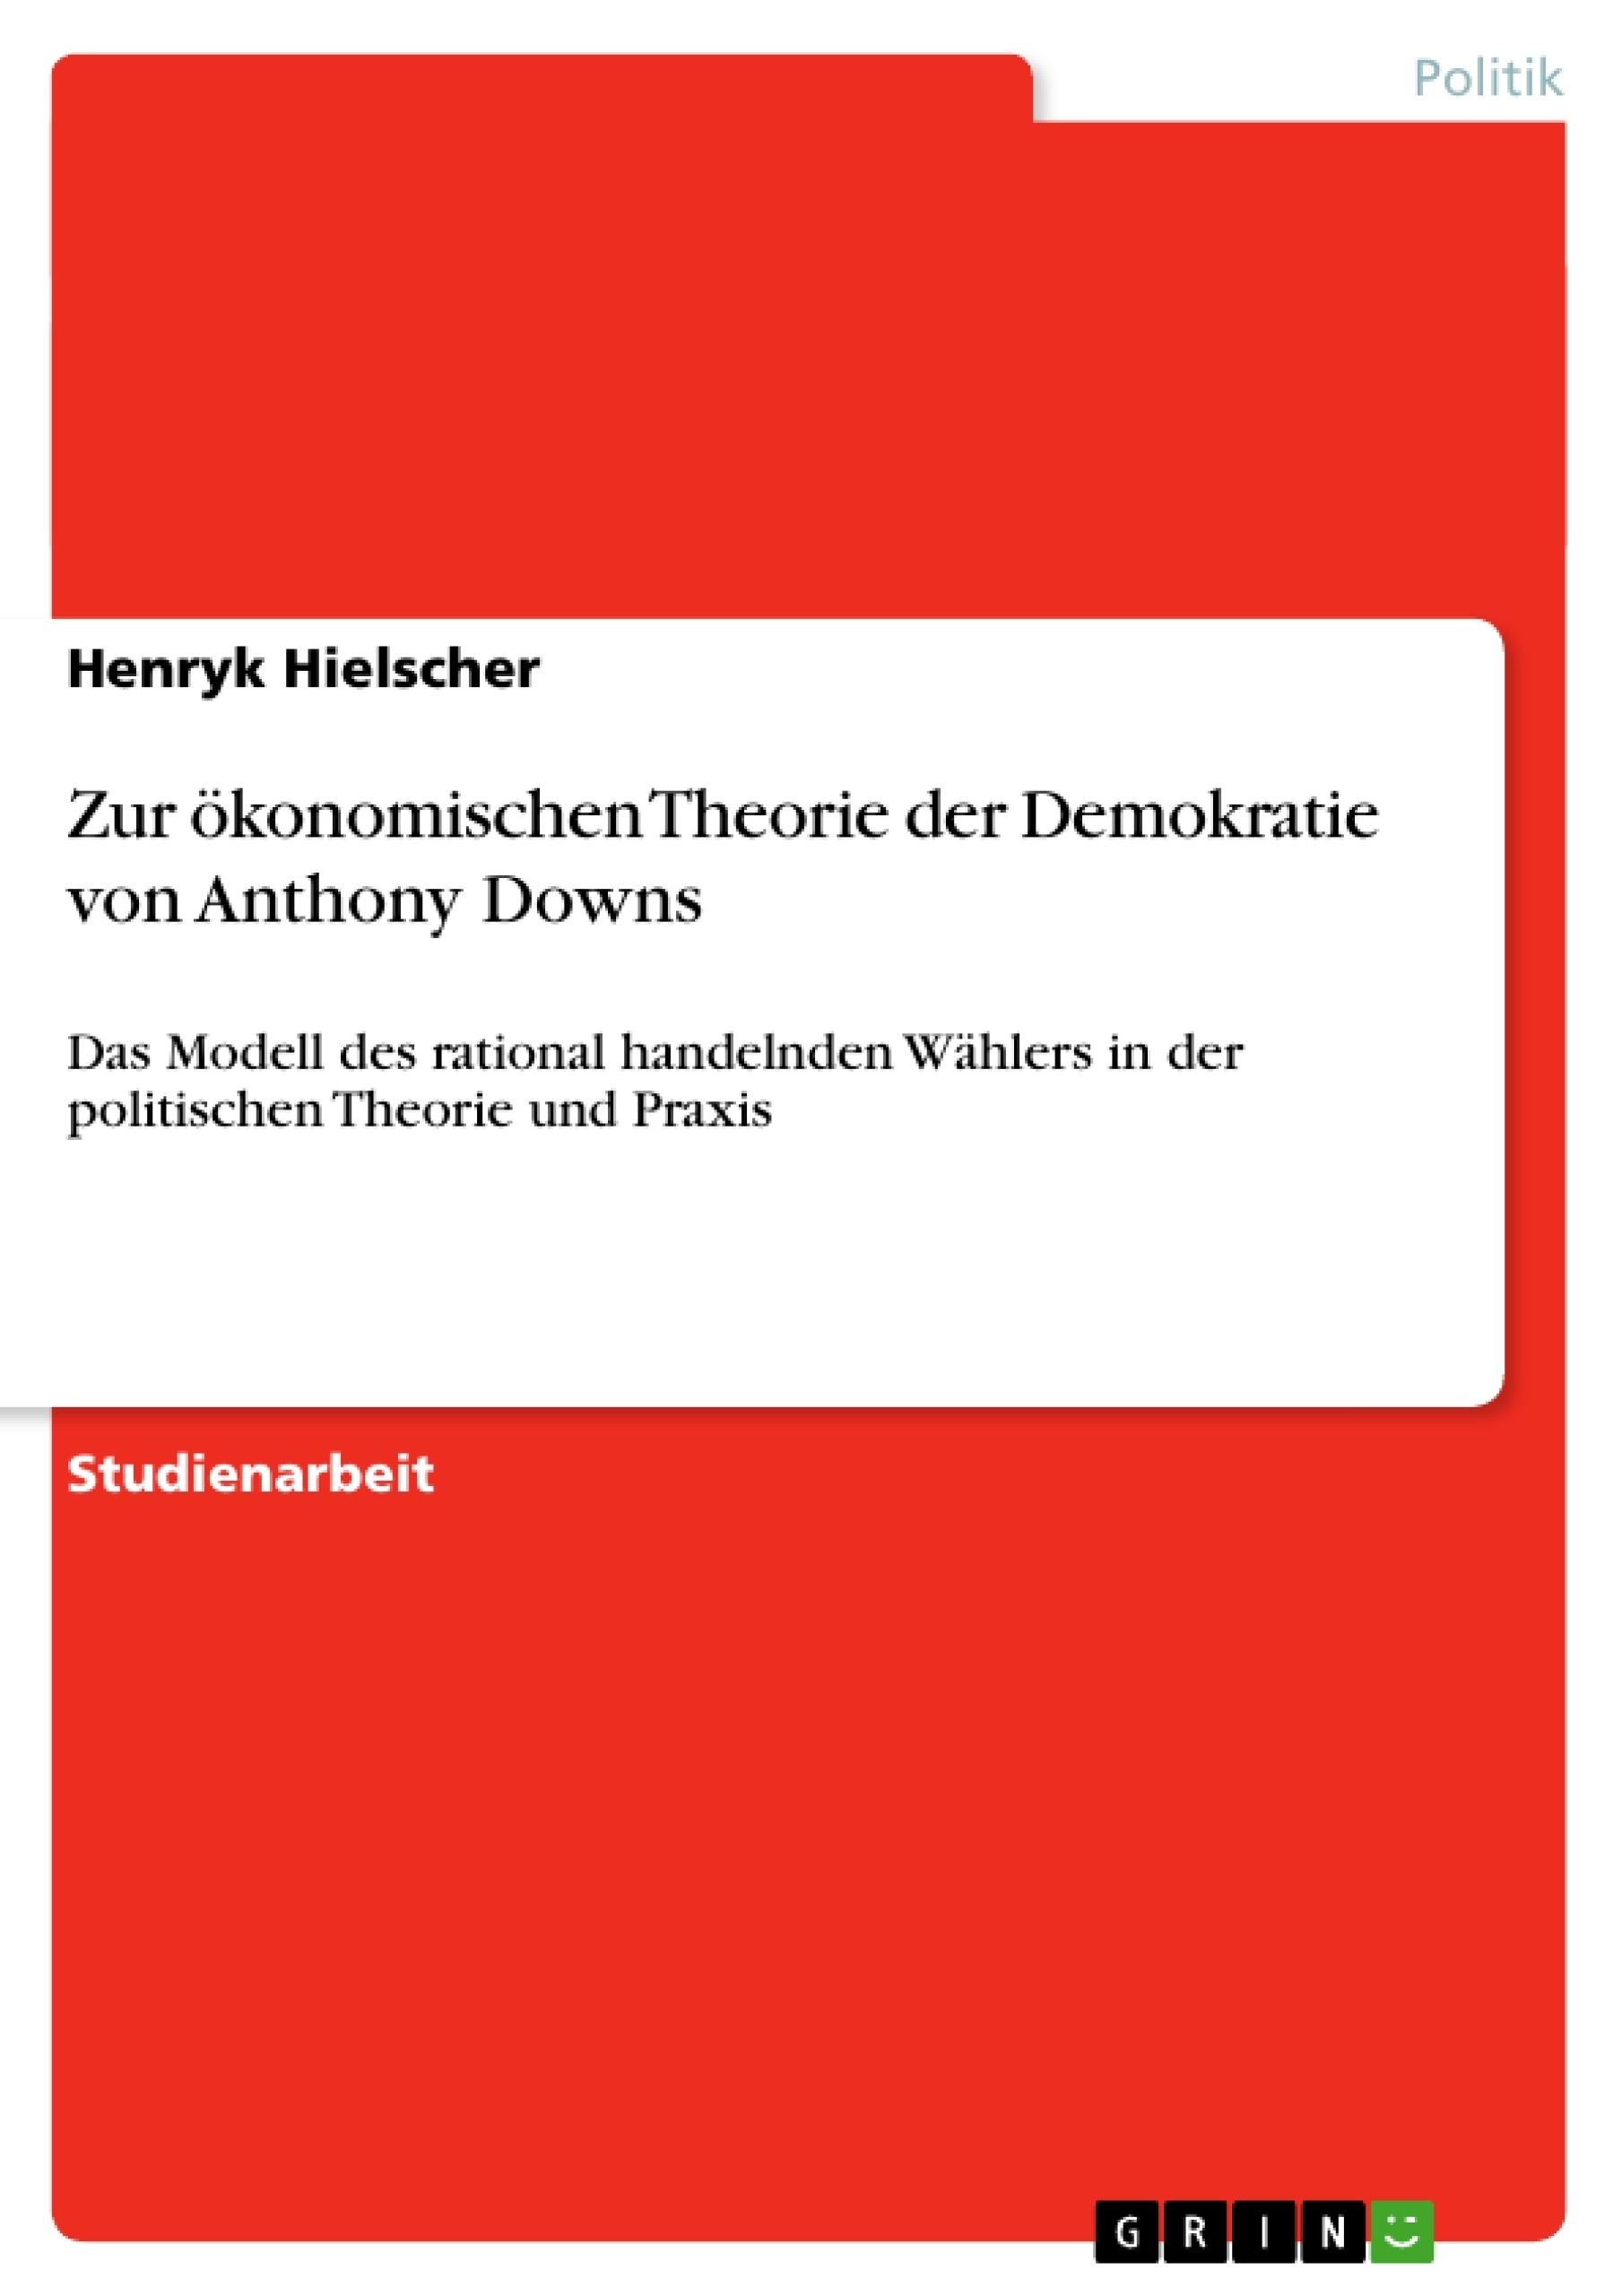 Título: Zur ökonomischen Theorie der Demokratie von Anthony Downs